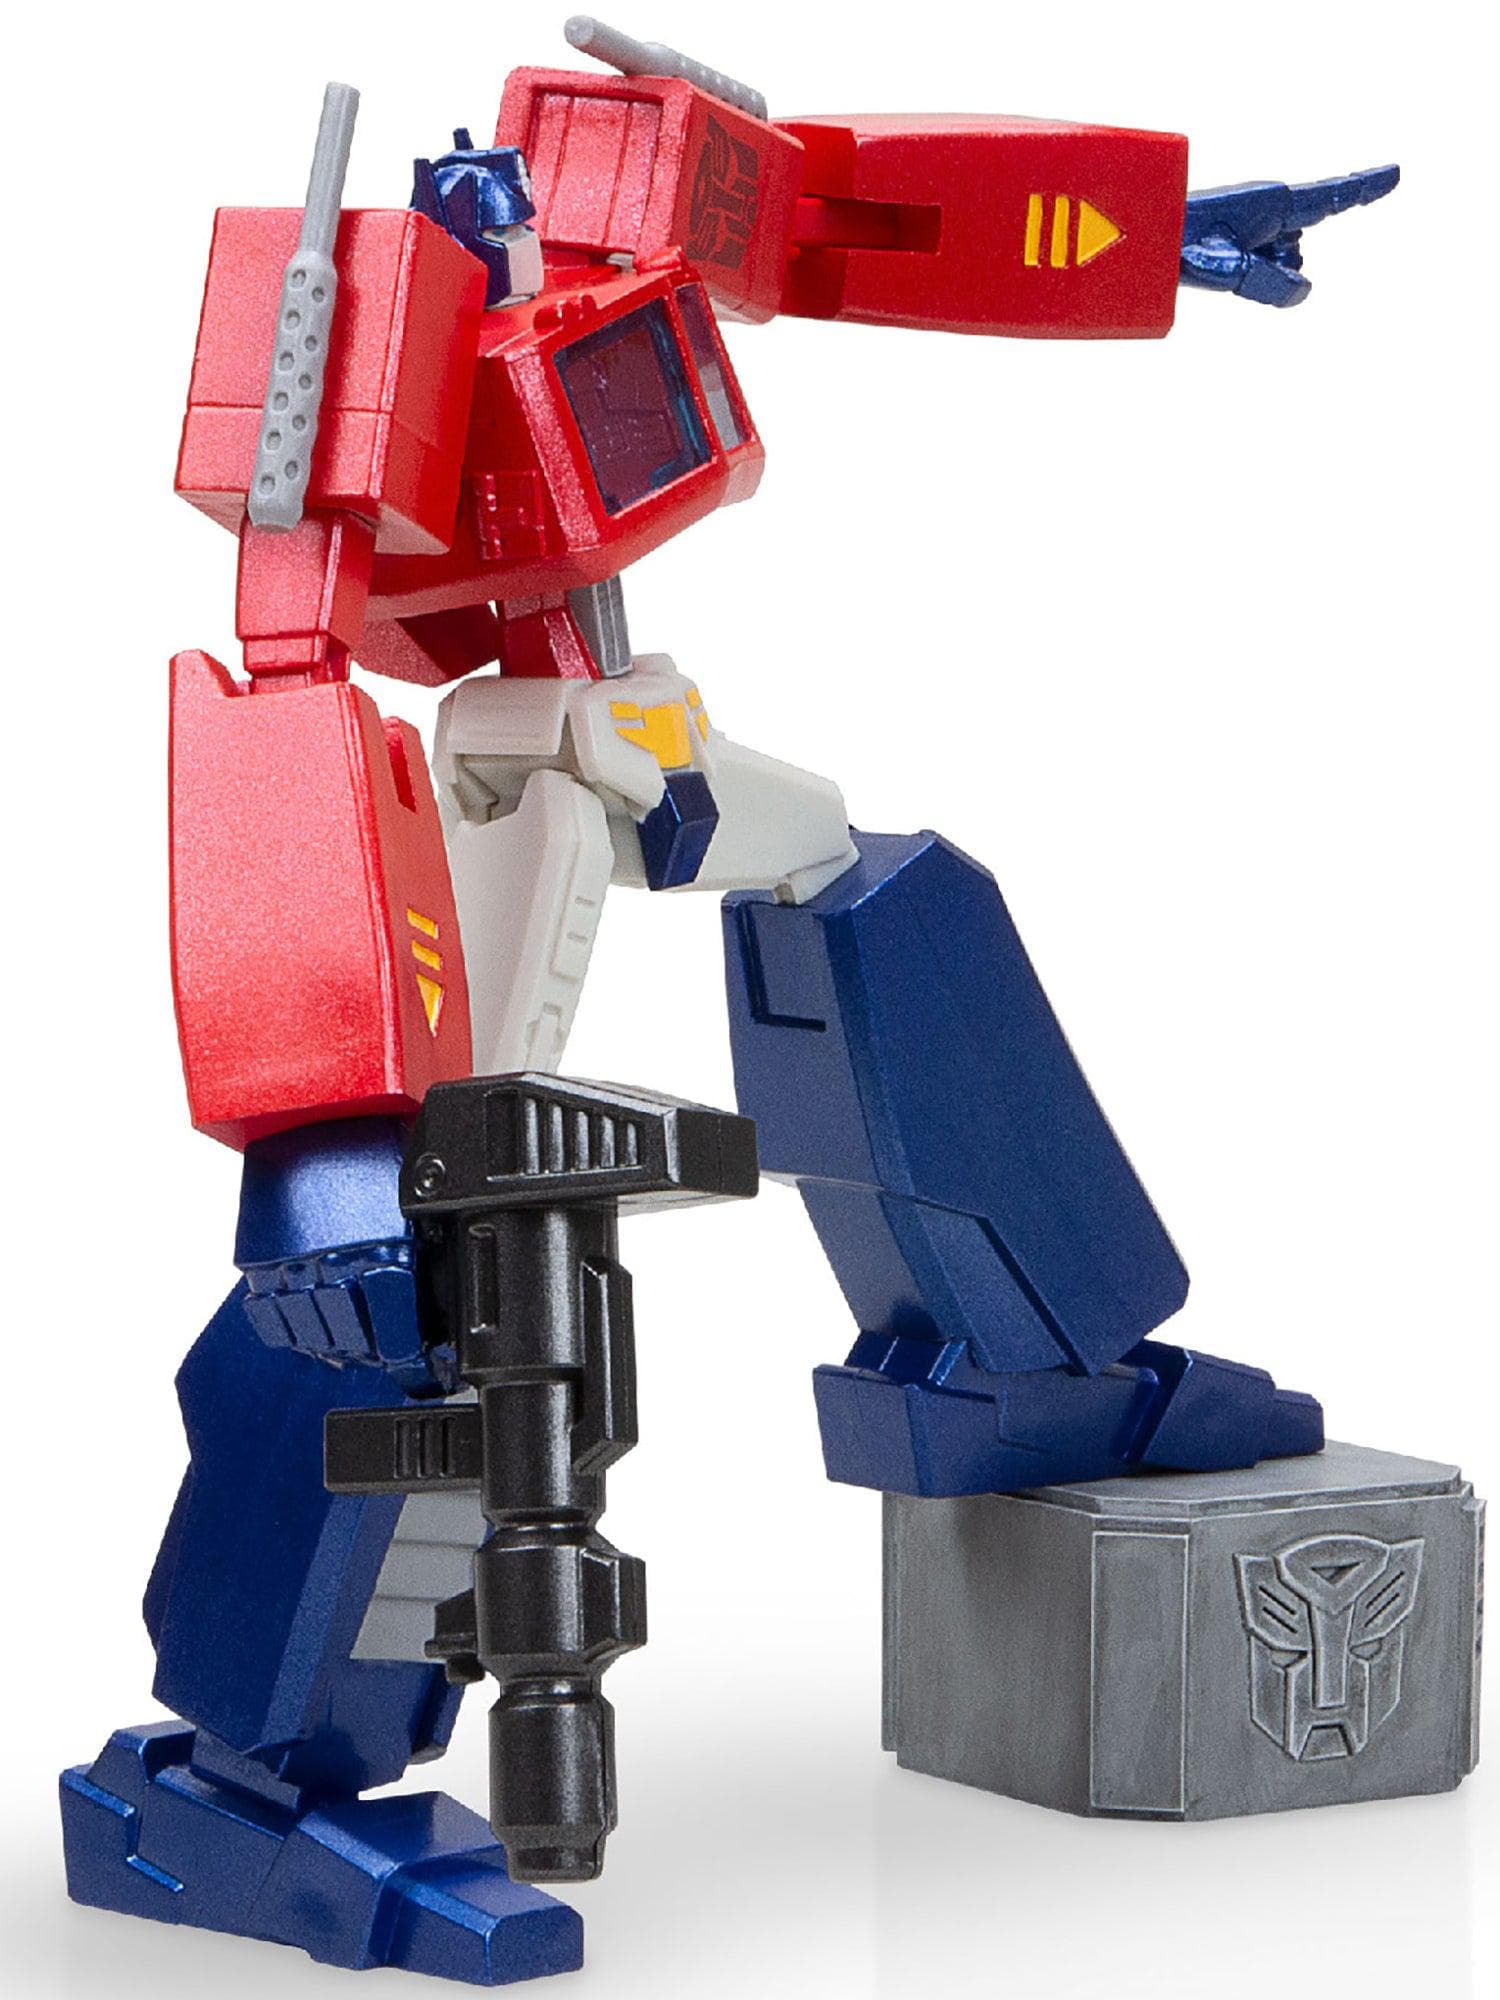 Transformers Optimus Prime Figure - costumes.com